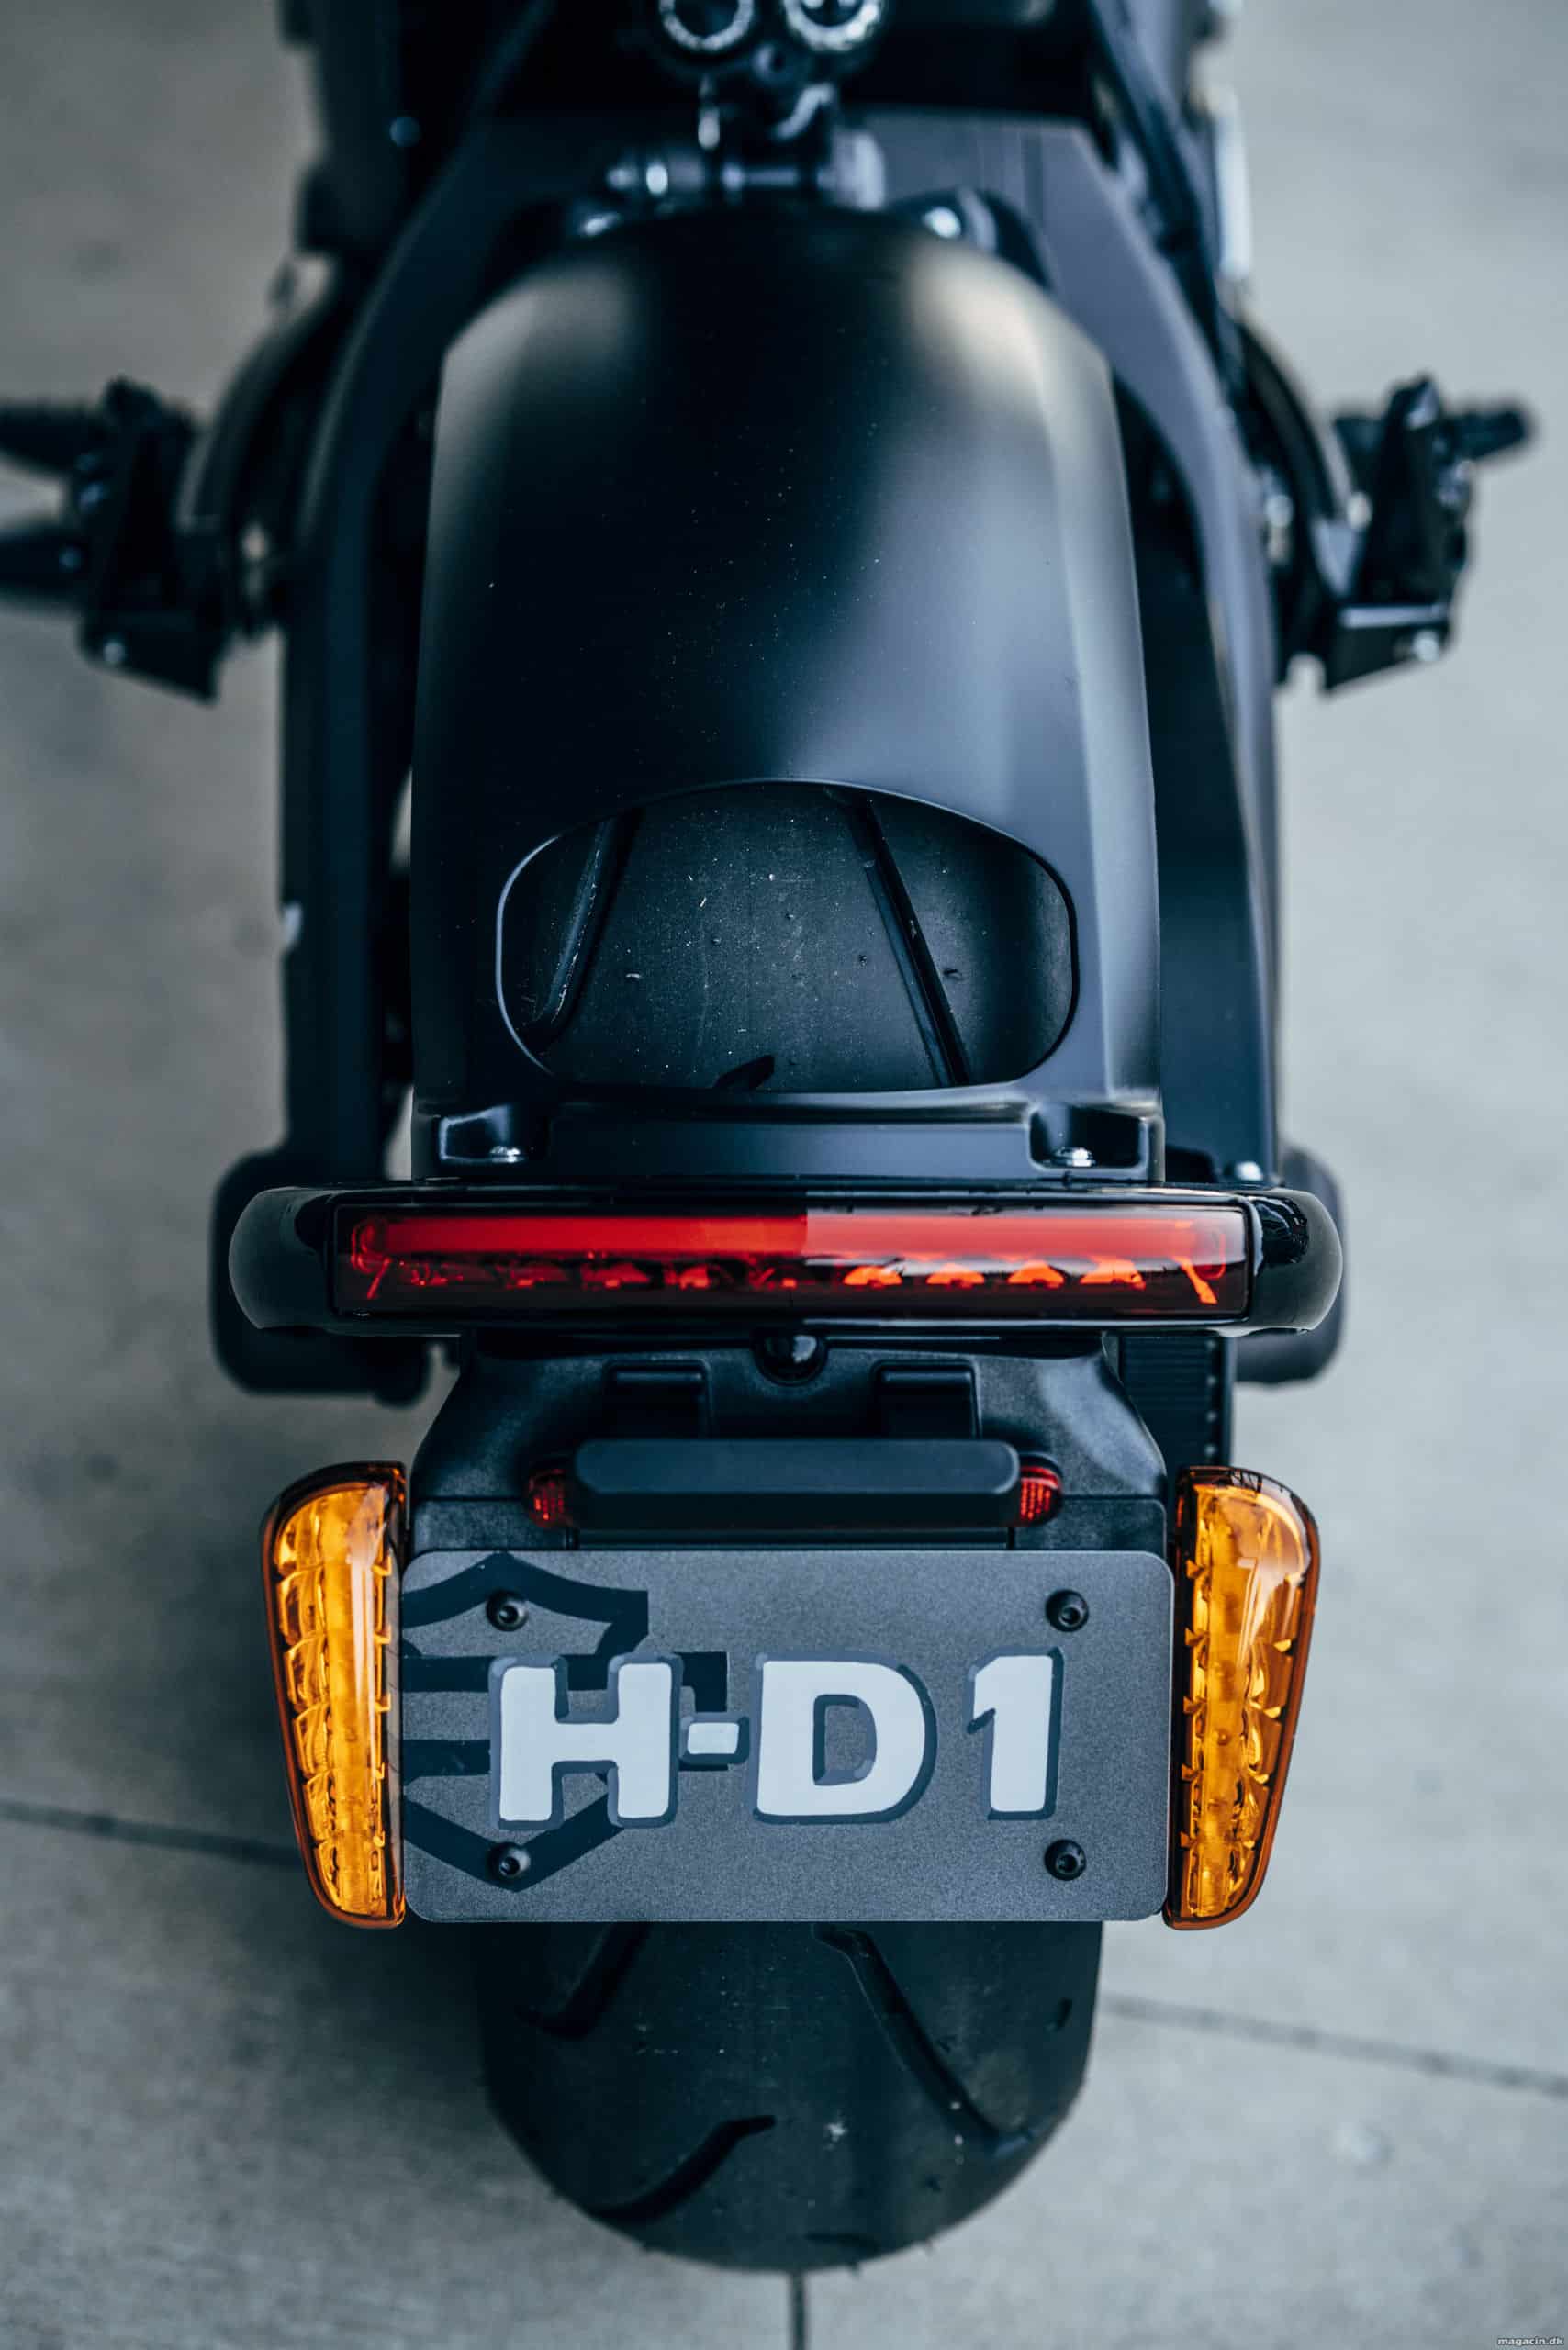 Test: Harley Davidson LiveWire